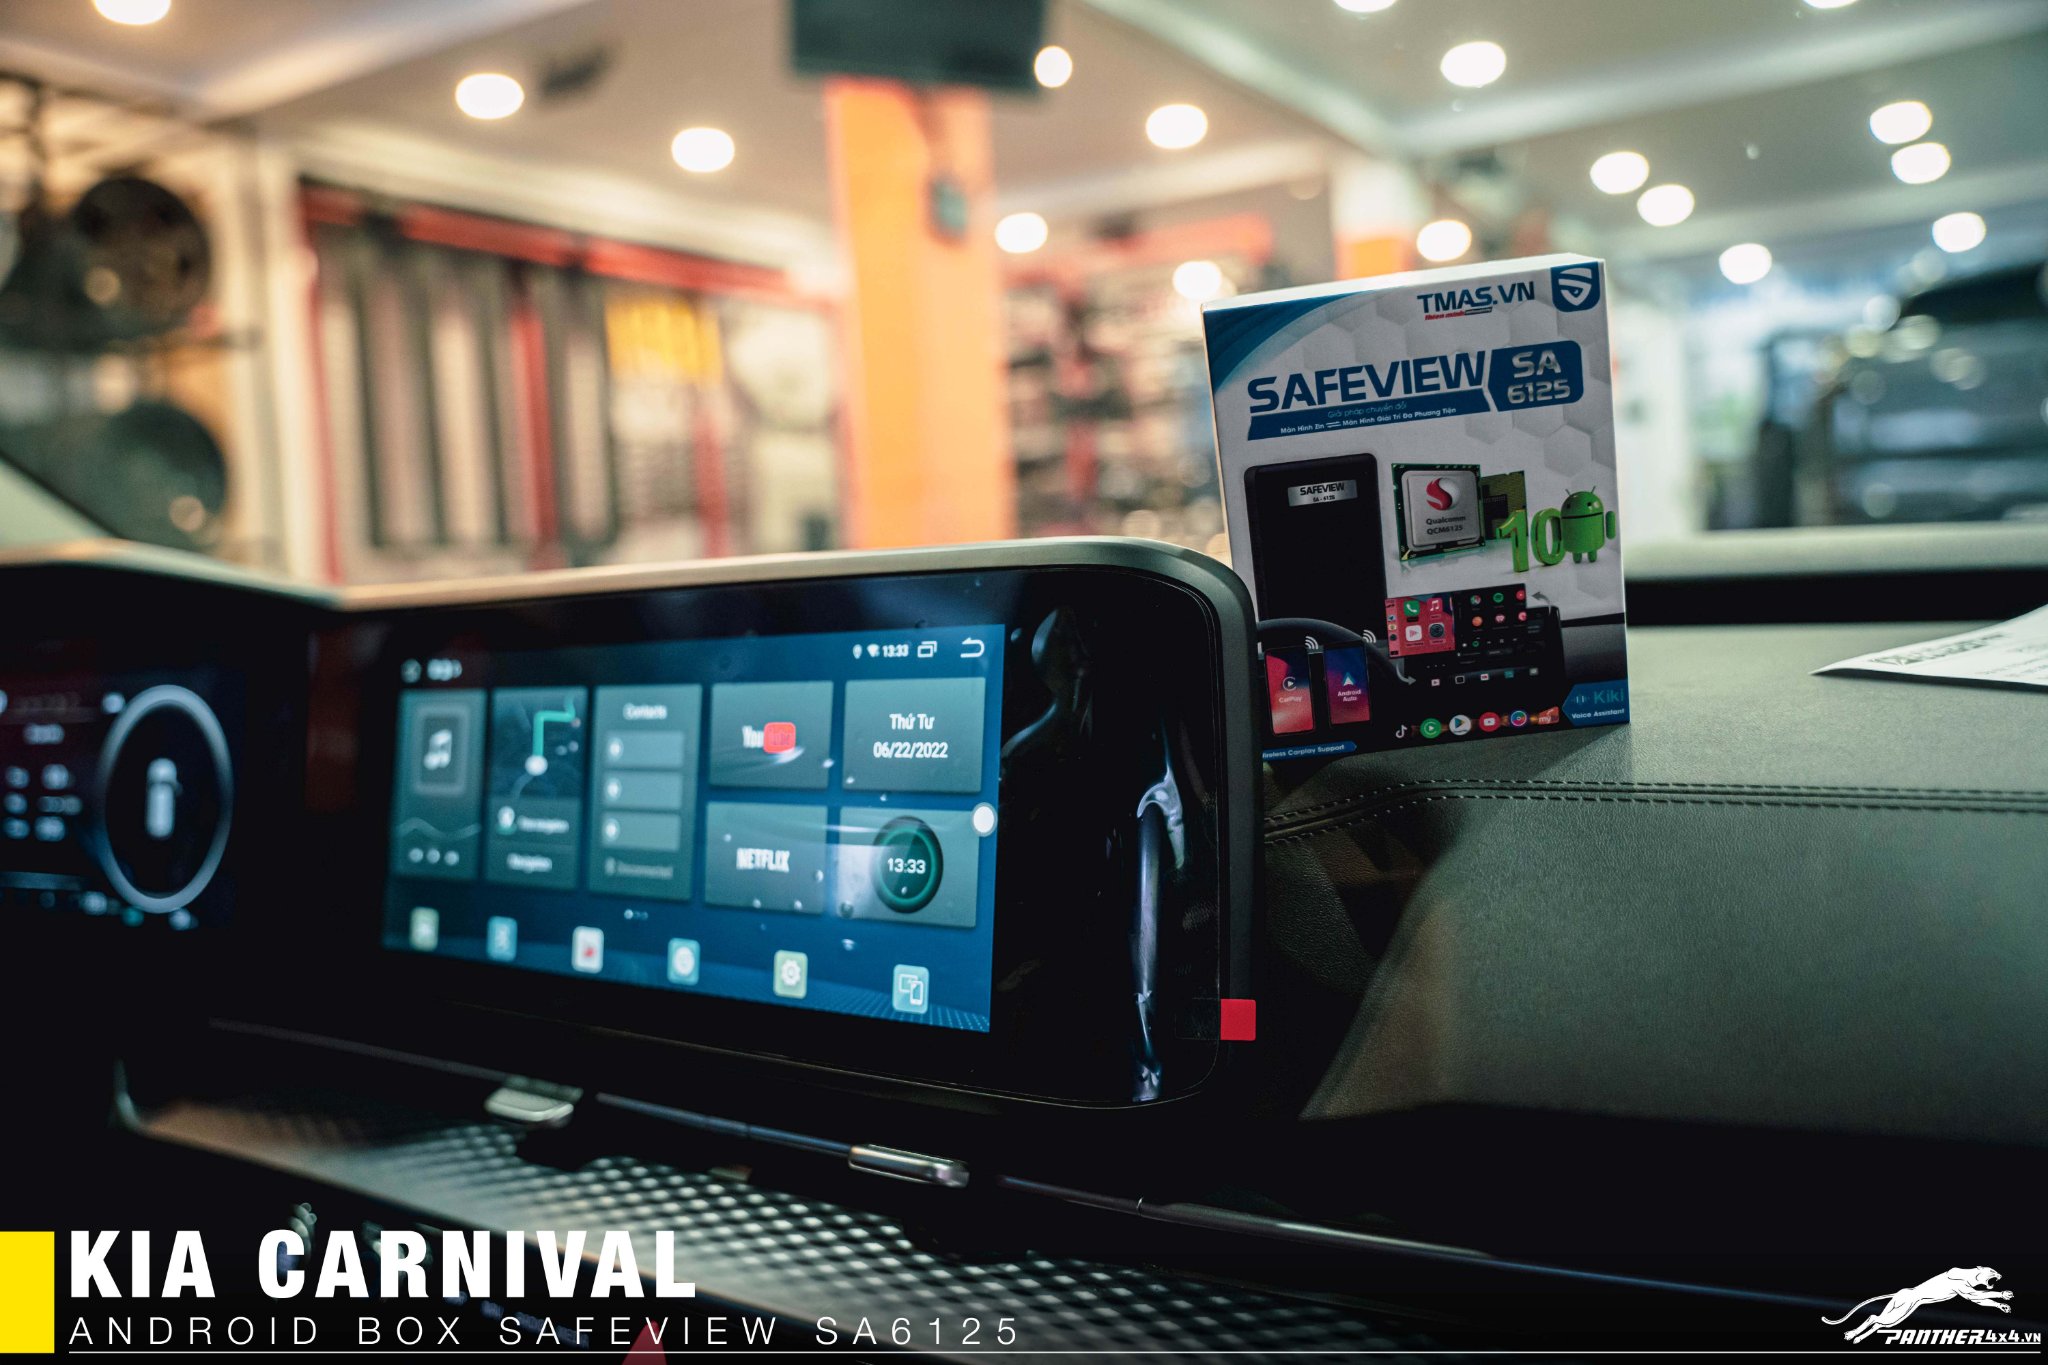 Android Box cho Kia Carnival - Android Box Safeview SA 6125